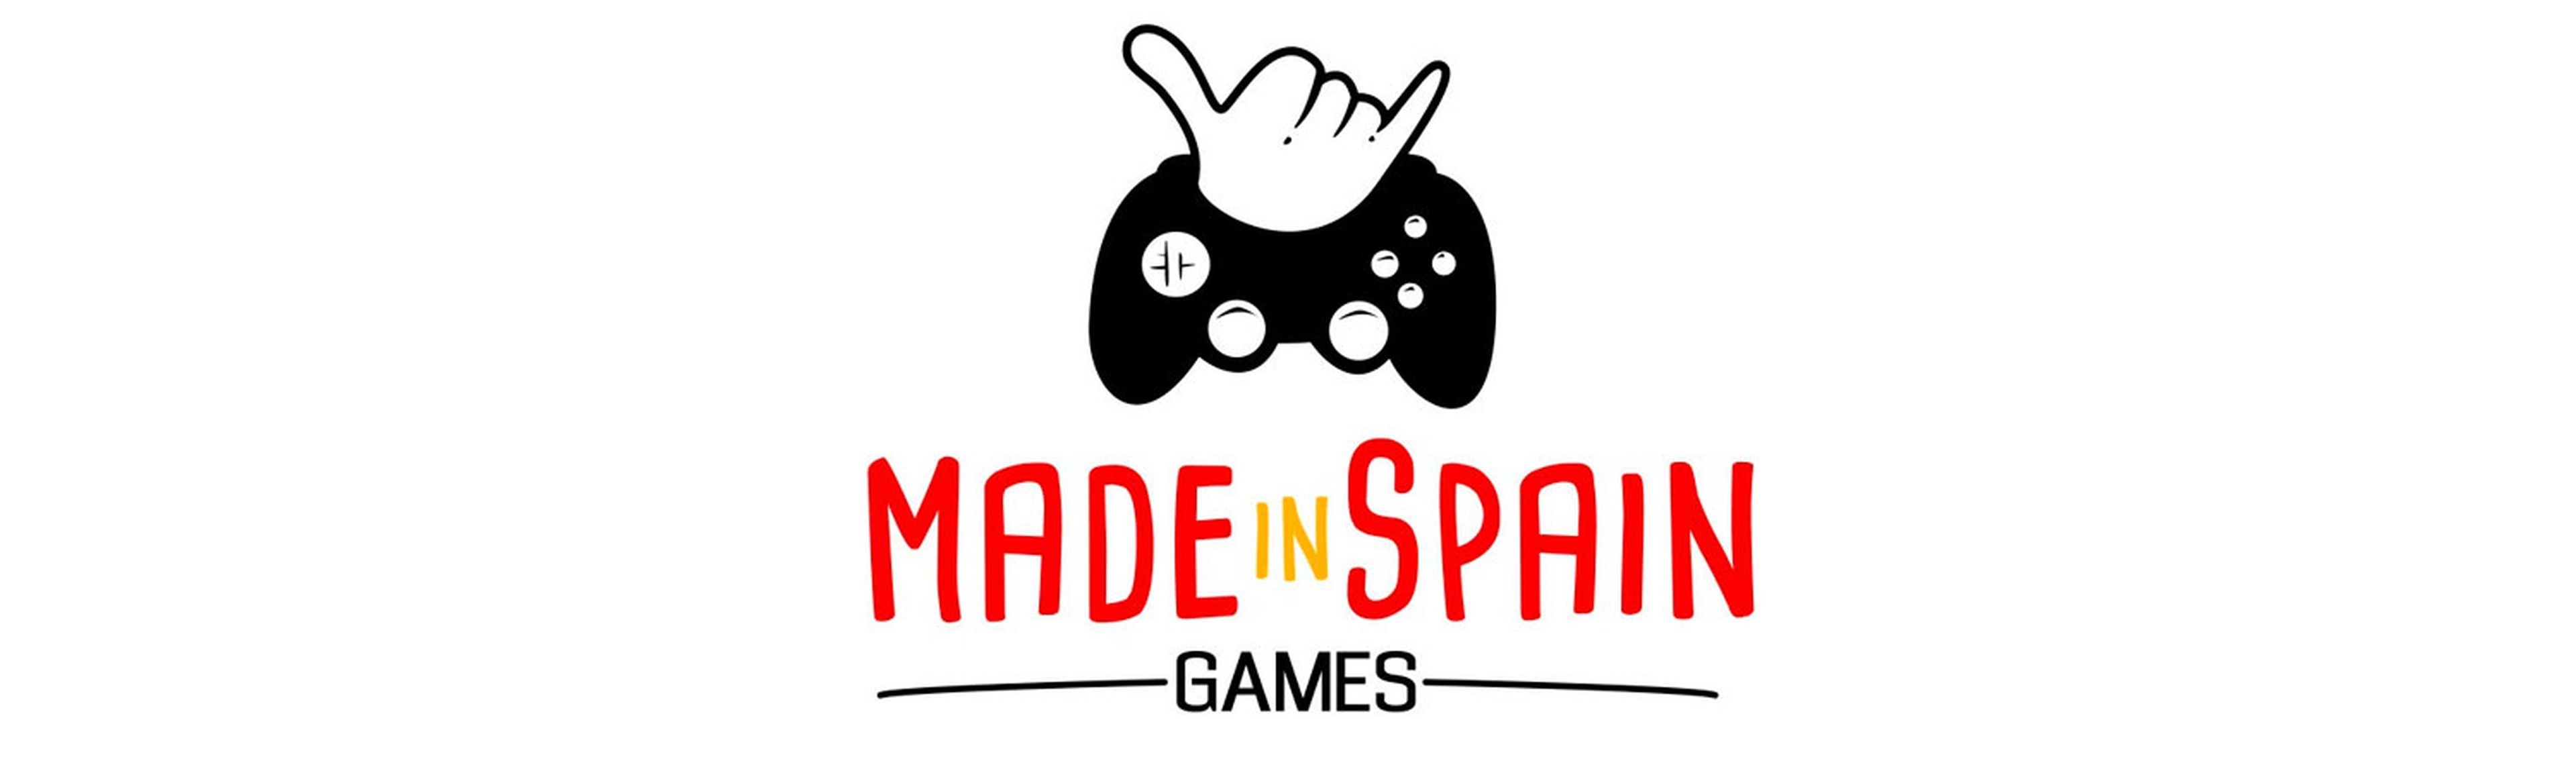 MadeInSpain Games